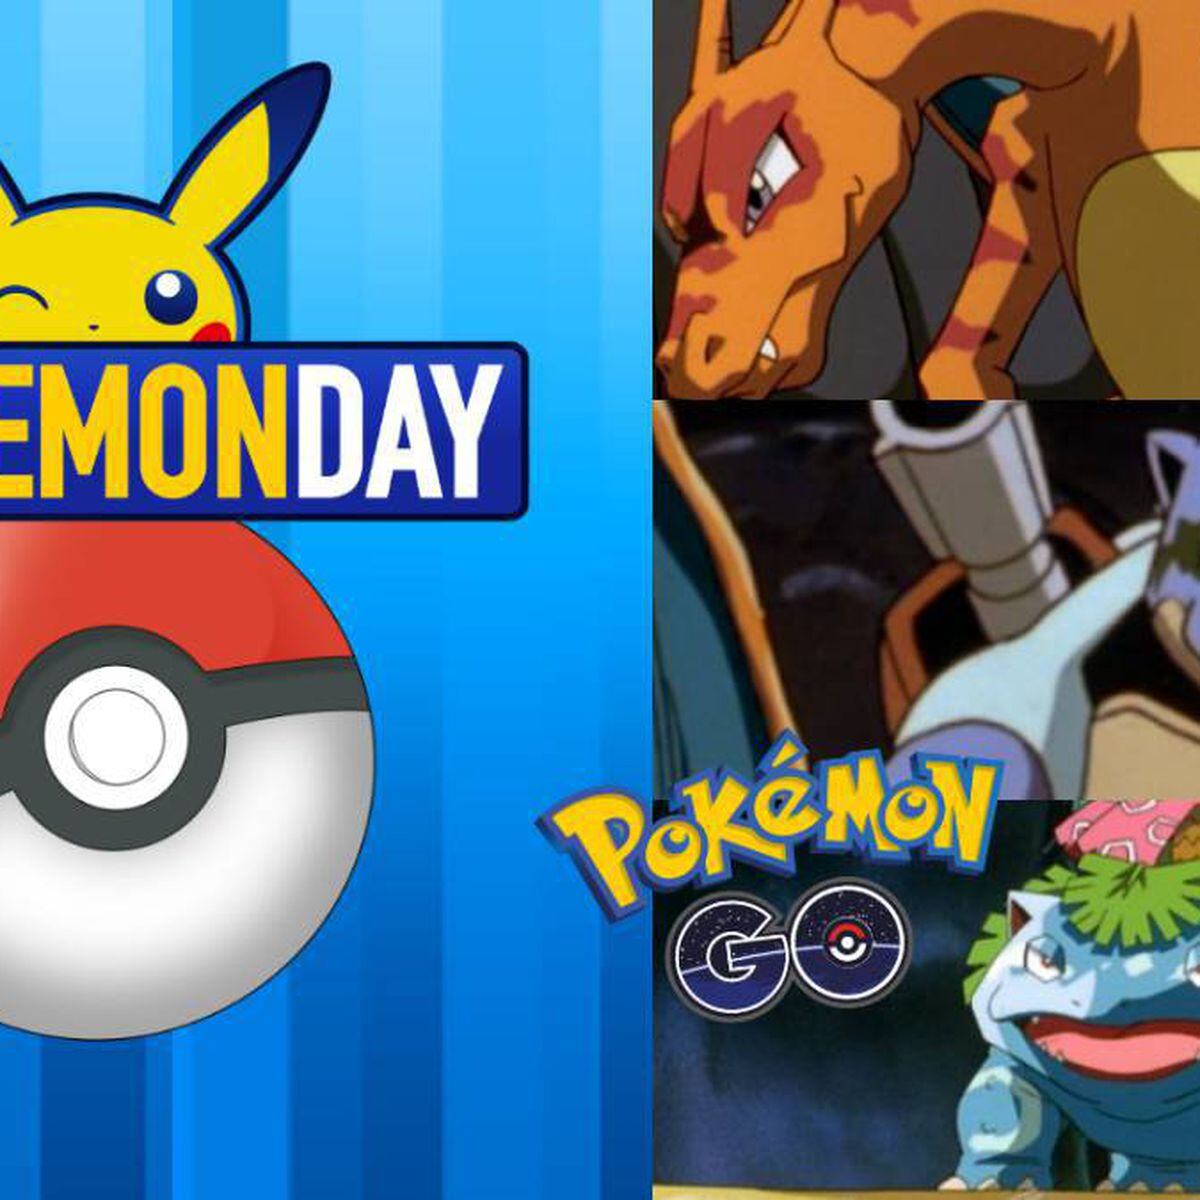 Arranca el Día de Pokémon en Pokémon GO: claves y tráiler de Mewtwo con  armadura, clones y más - Nintenderos